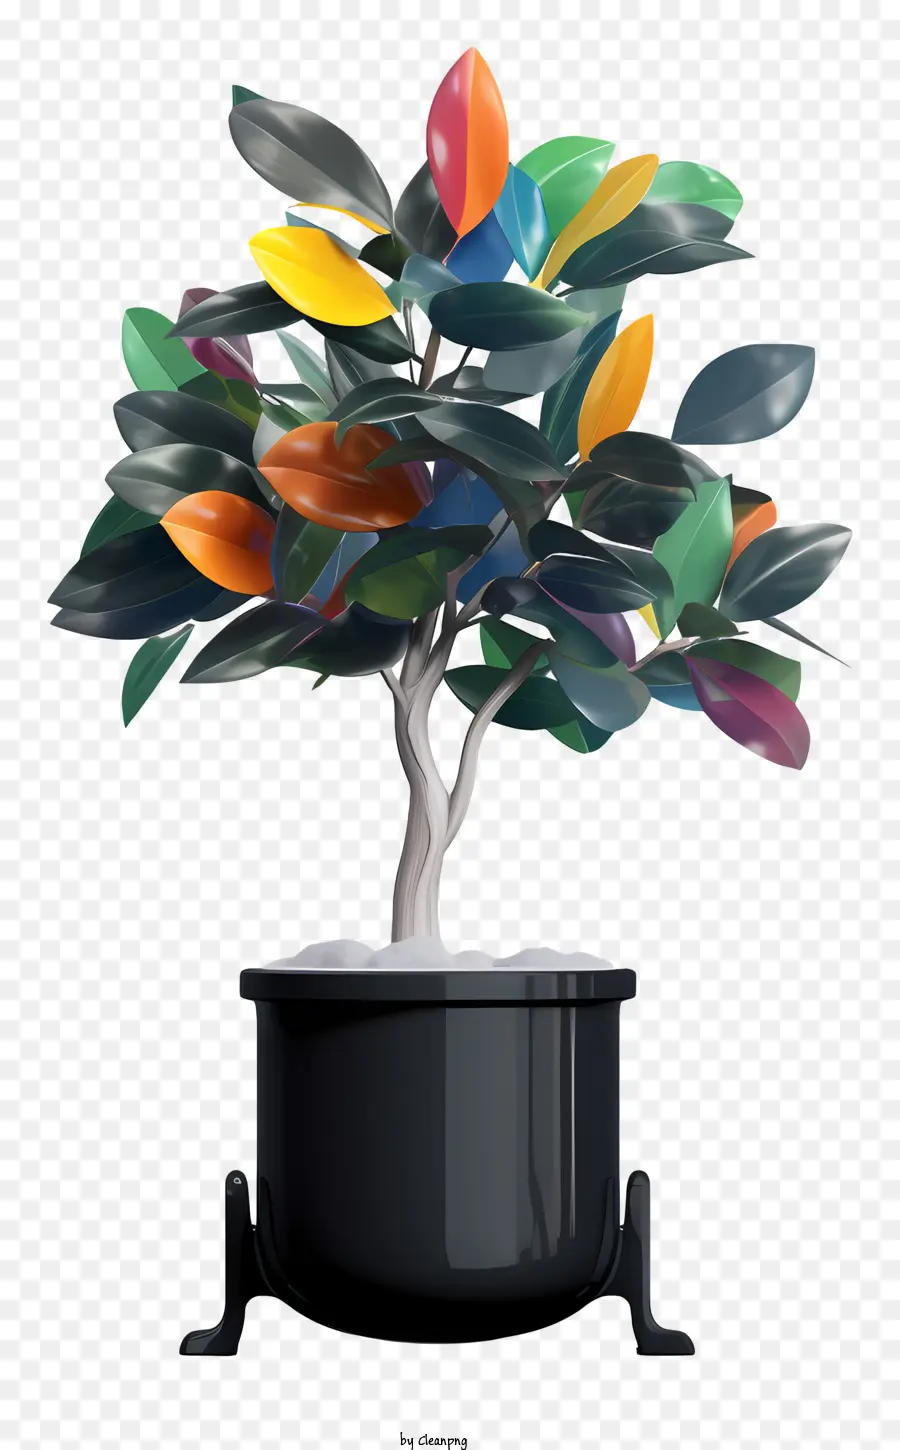 Orange - Buntes Baum mit schwarzem Topf, symmetrische Blätter